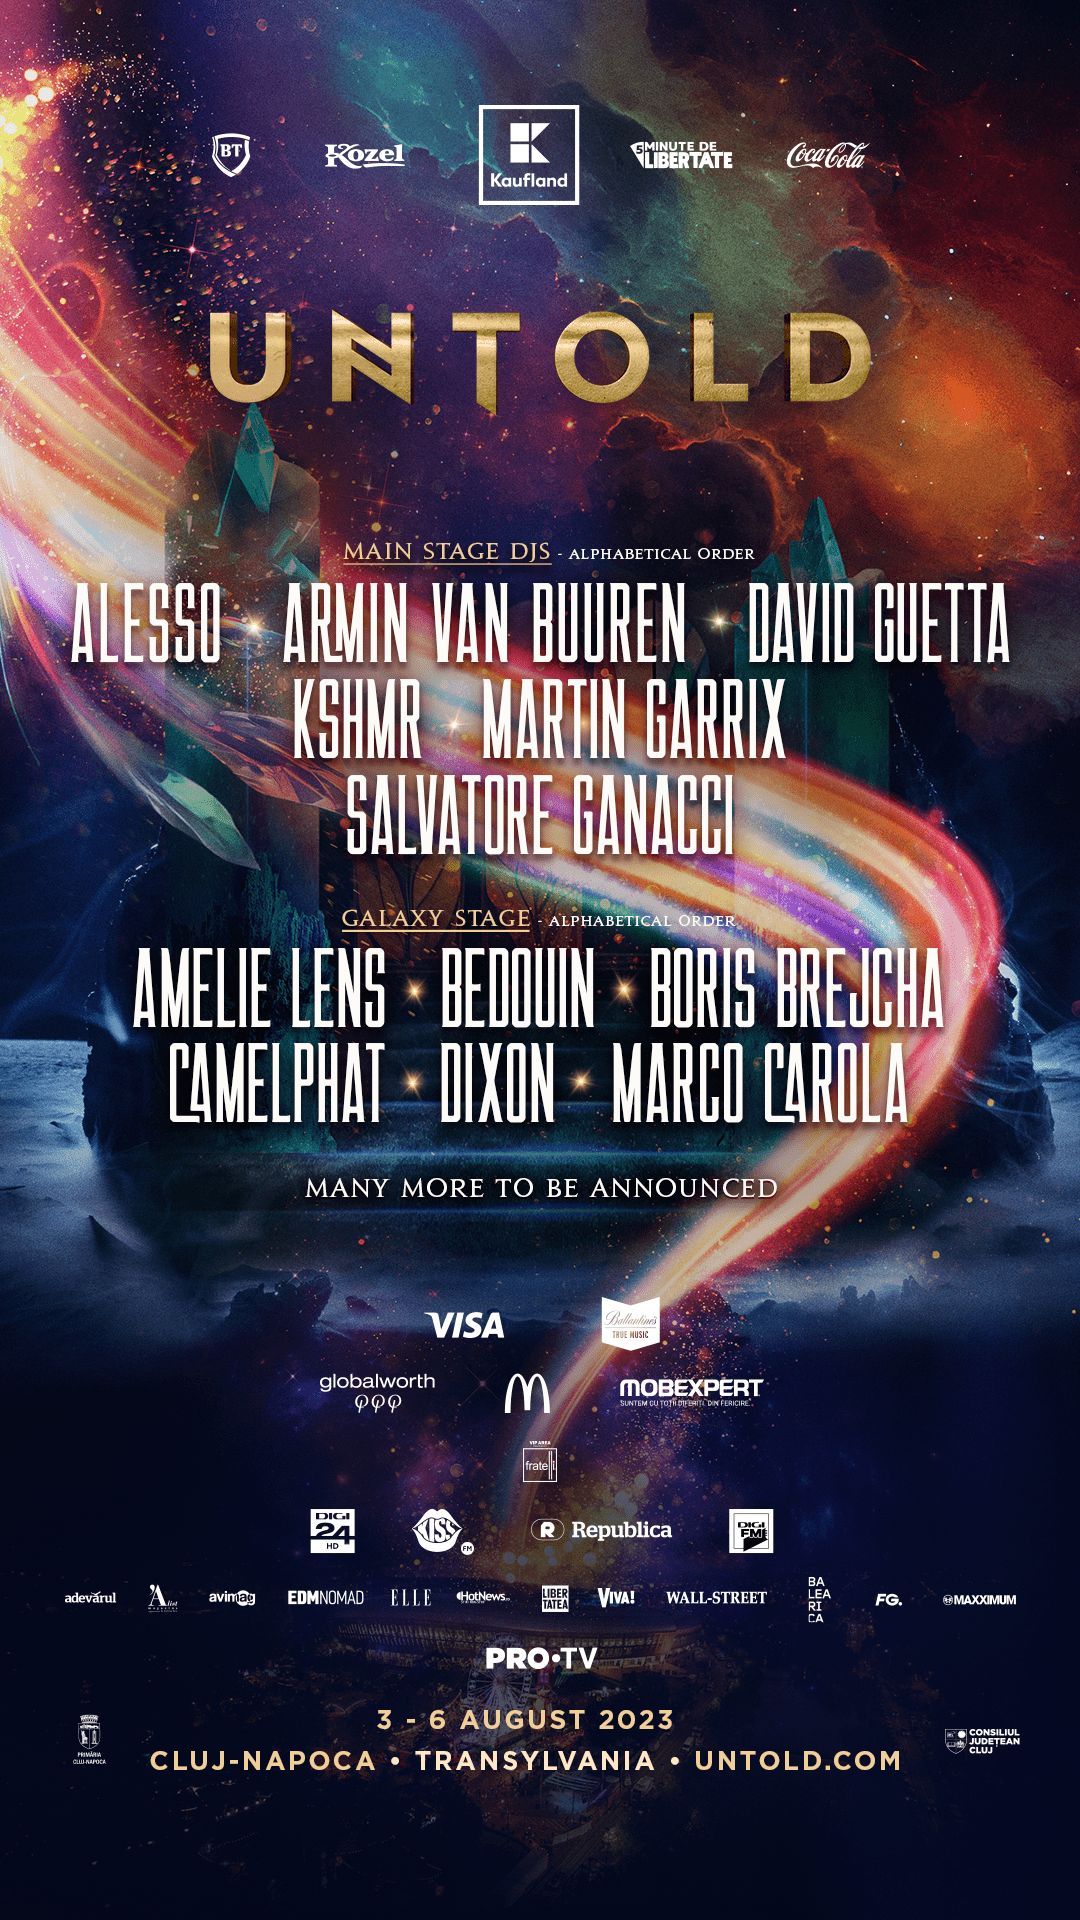 Martin Garrix, DJ-ul nr. 1 al lumii, revine la Untold. David Guetta, Alesso Kshm, Salvatore Ganacci vin la festivalul din Cluj, alături de Armin van Buuren și Imagine Dragons